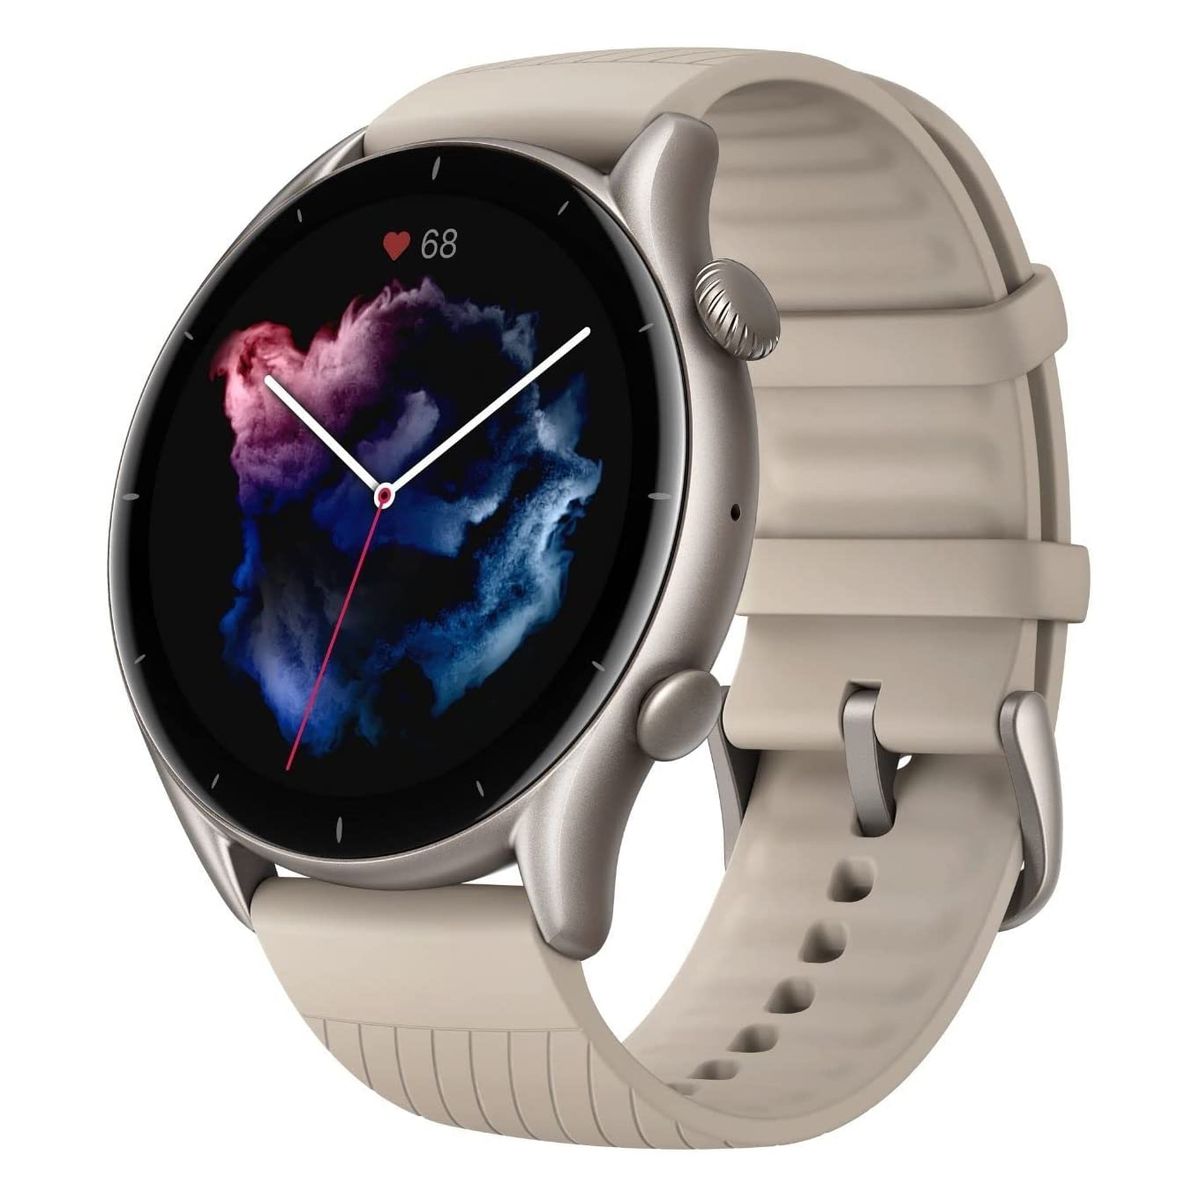 Amazfit'in GTR 3 akıllı saati Amazon'da şimdiye kadarki en iyi fiyatıyla satışta